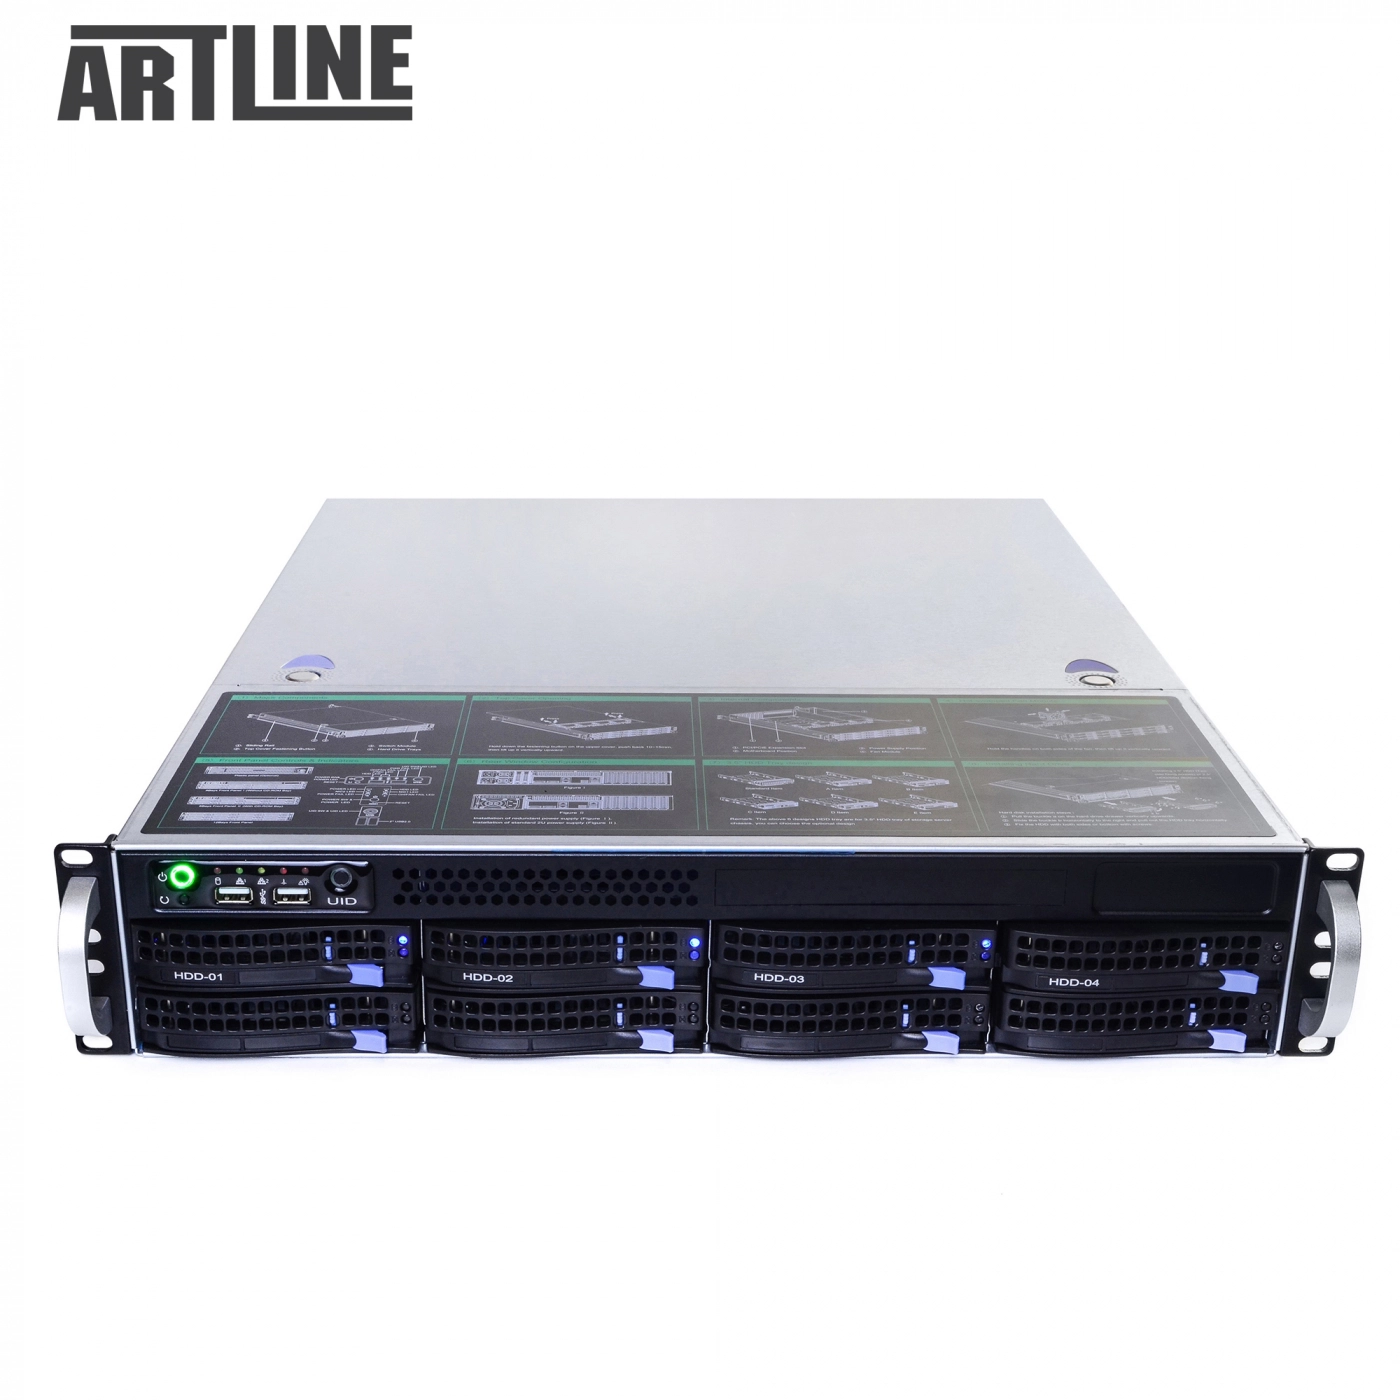 Купить Сервер ARTLINE Business R34v08 - фото 10